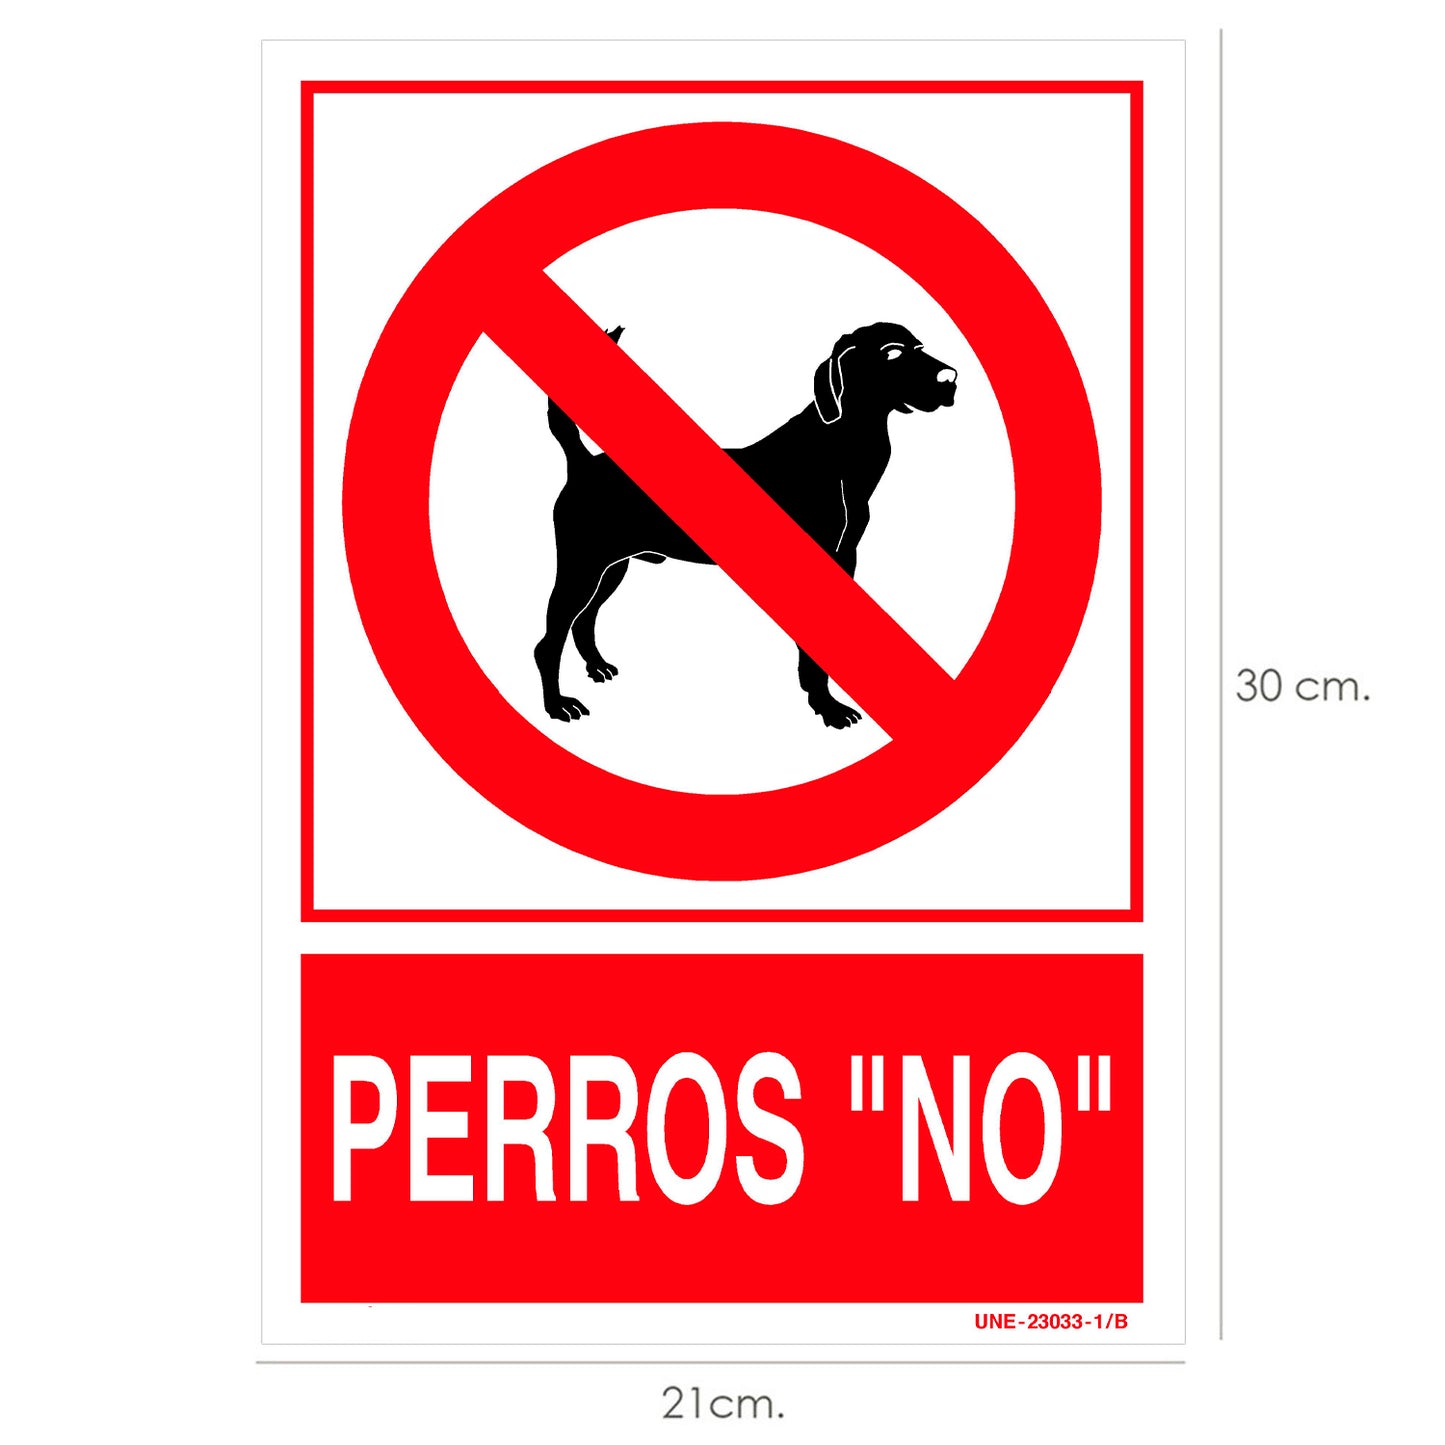 Cartel / Señal Perros "No" 30x21 cm.